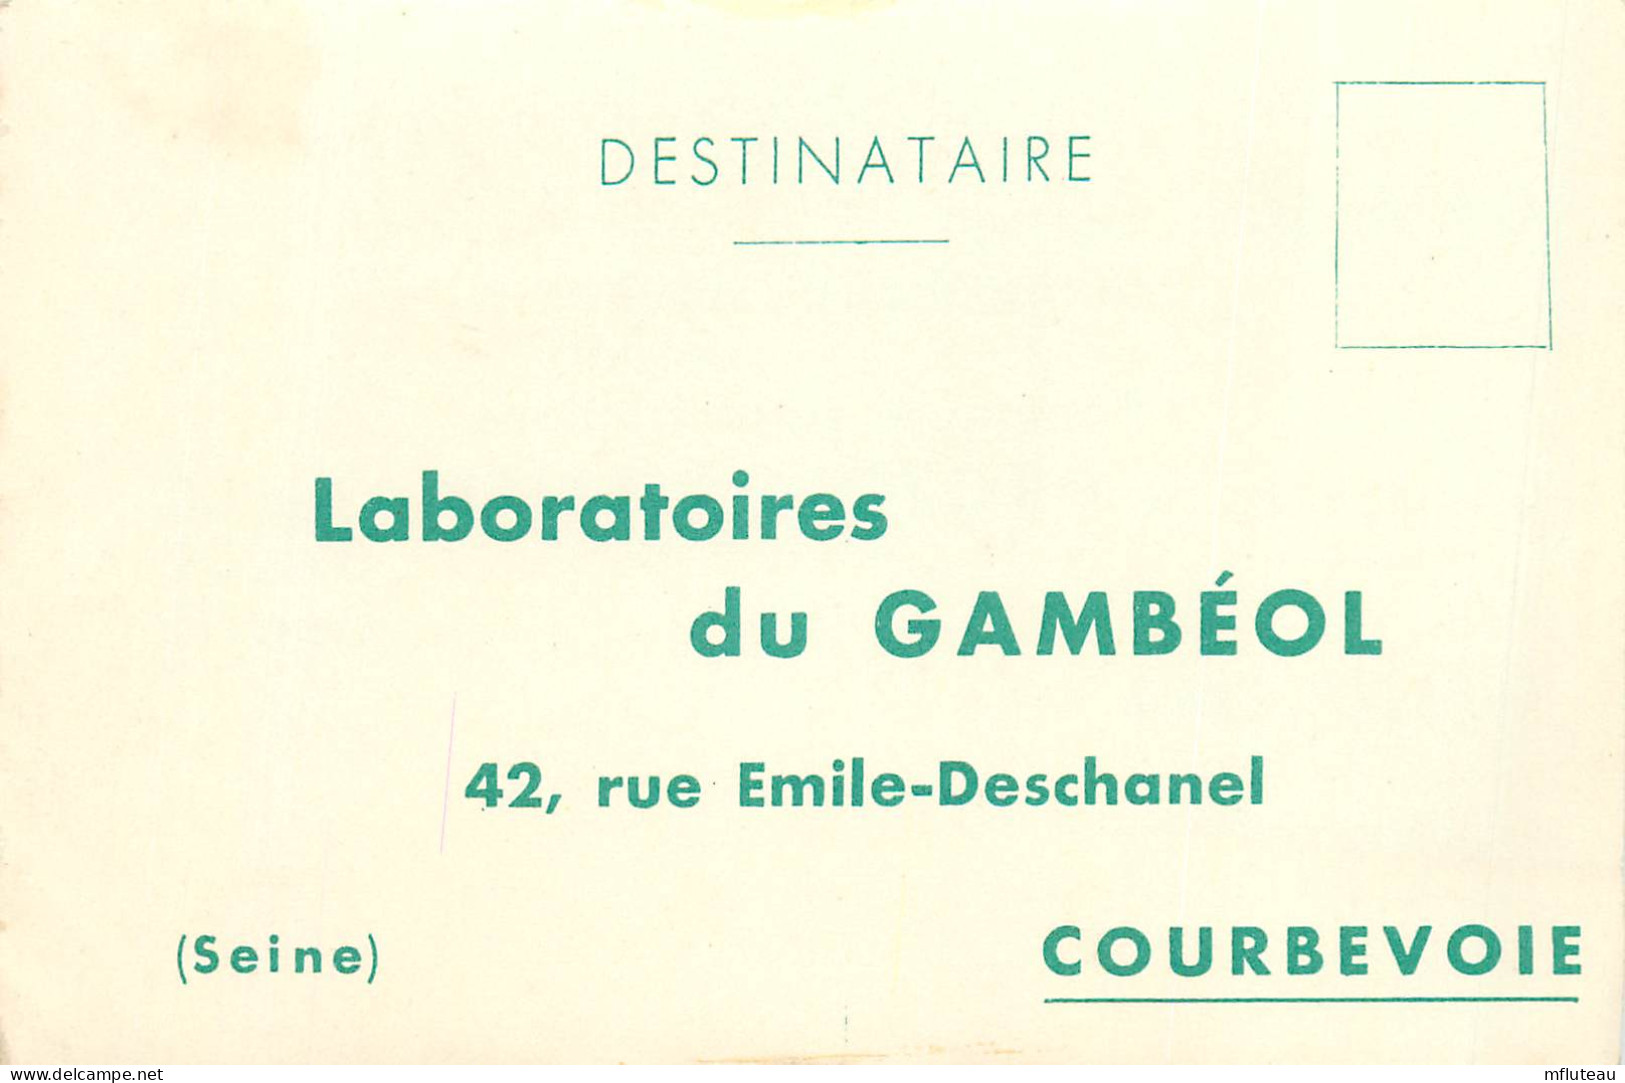 92* COURBEVOIE Labo Du Gambeol   RL10.0438 - Gesundheit